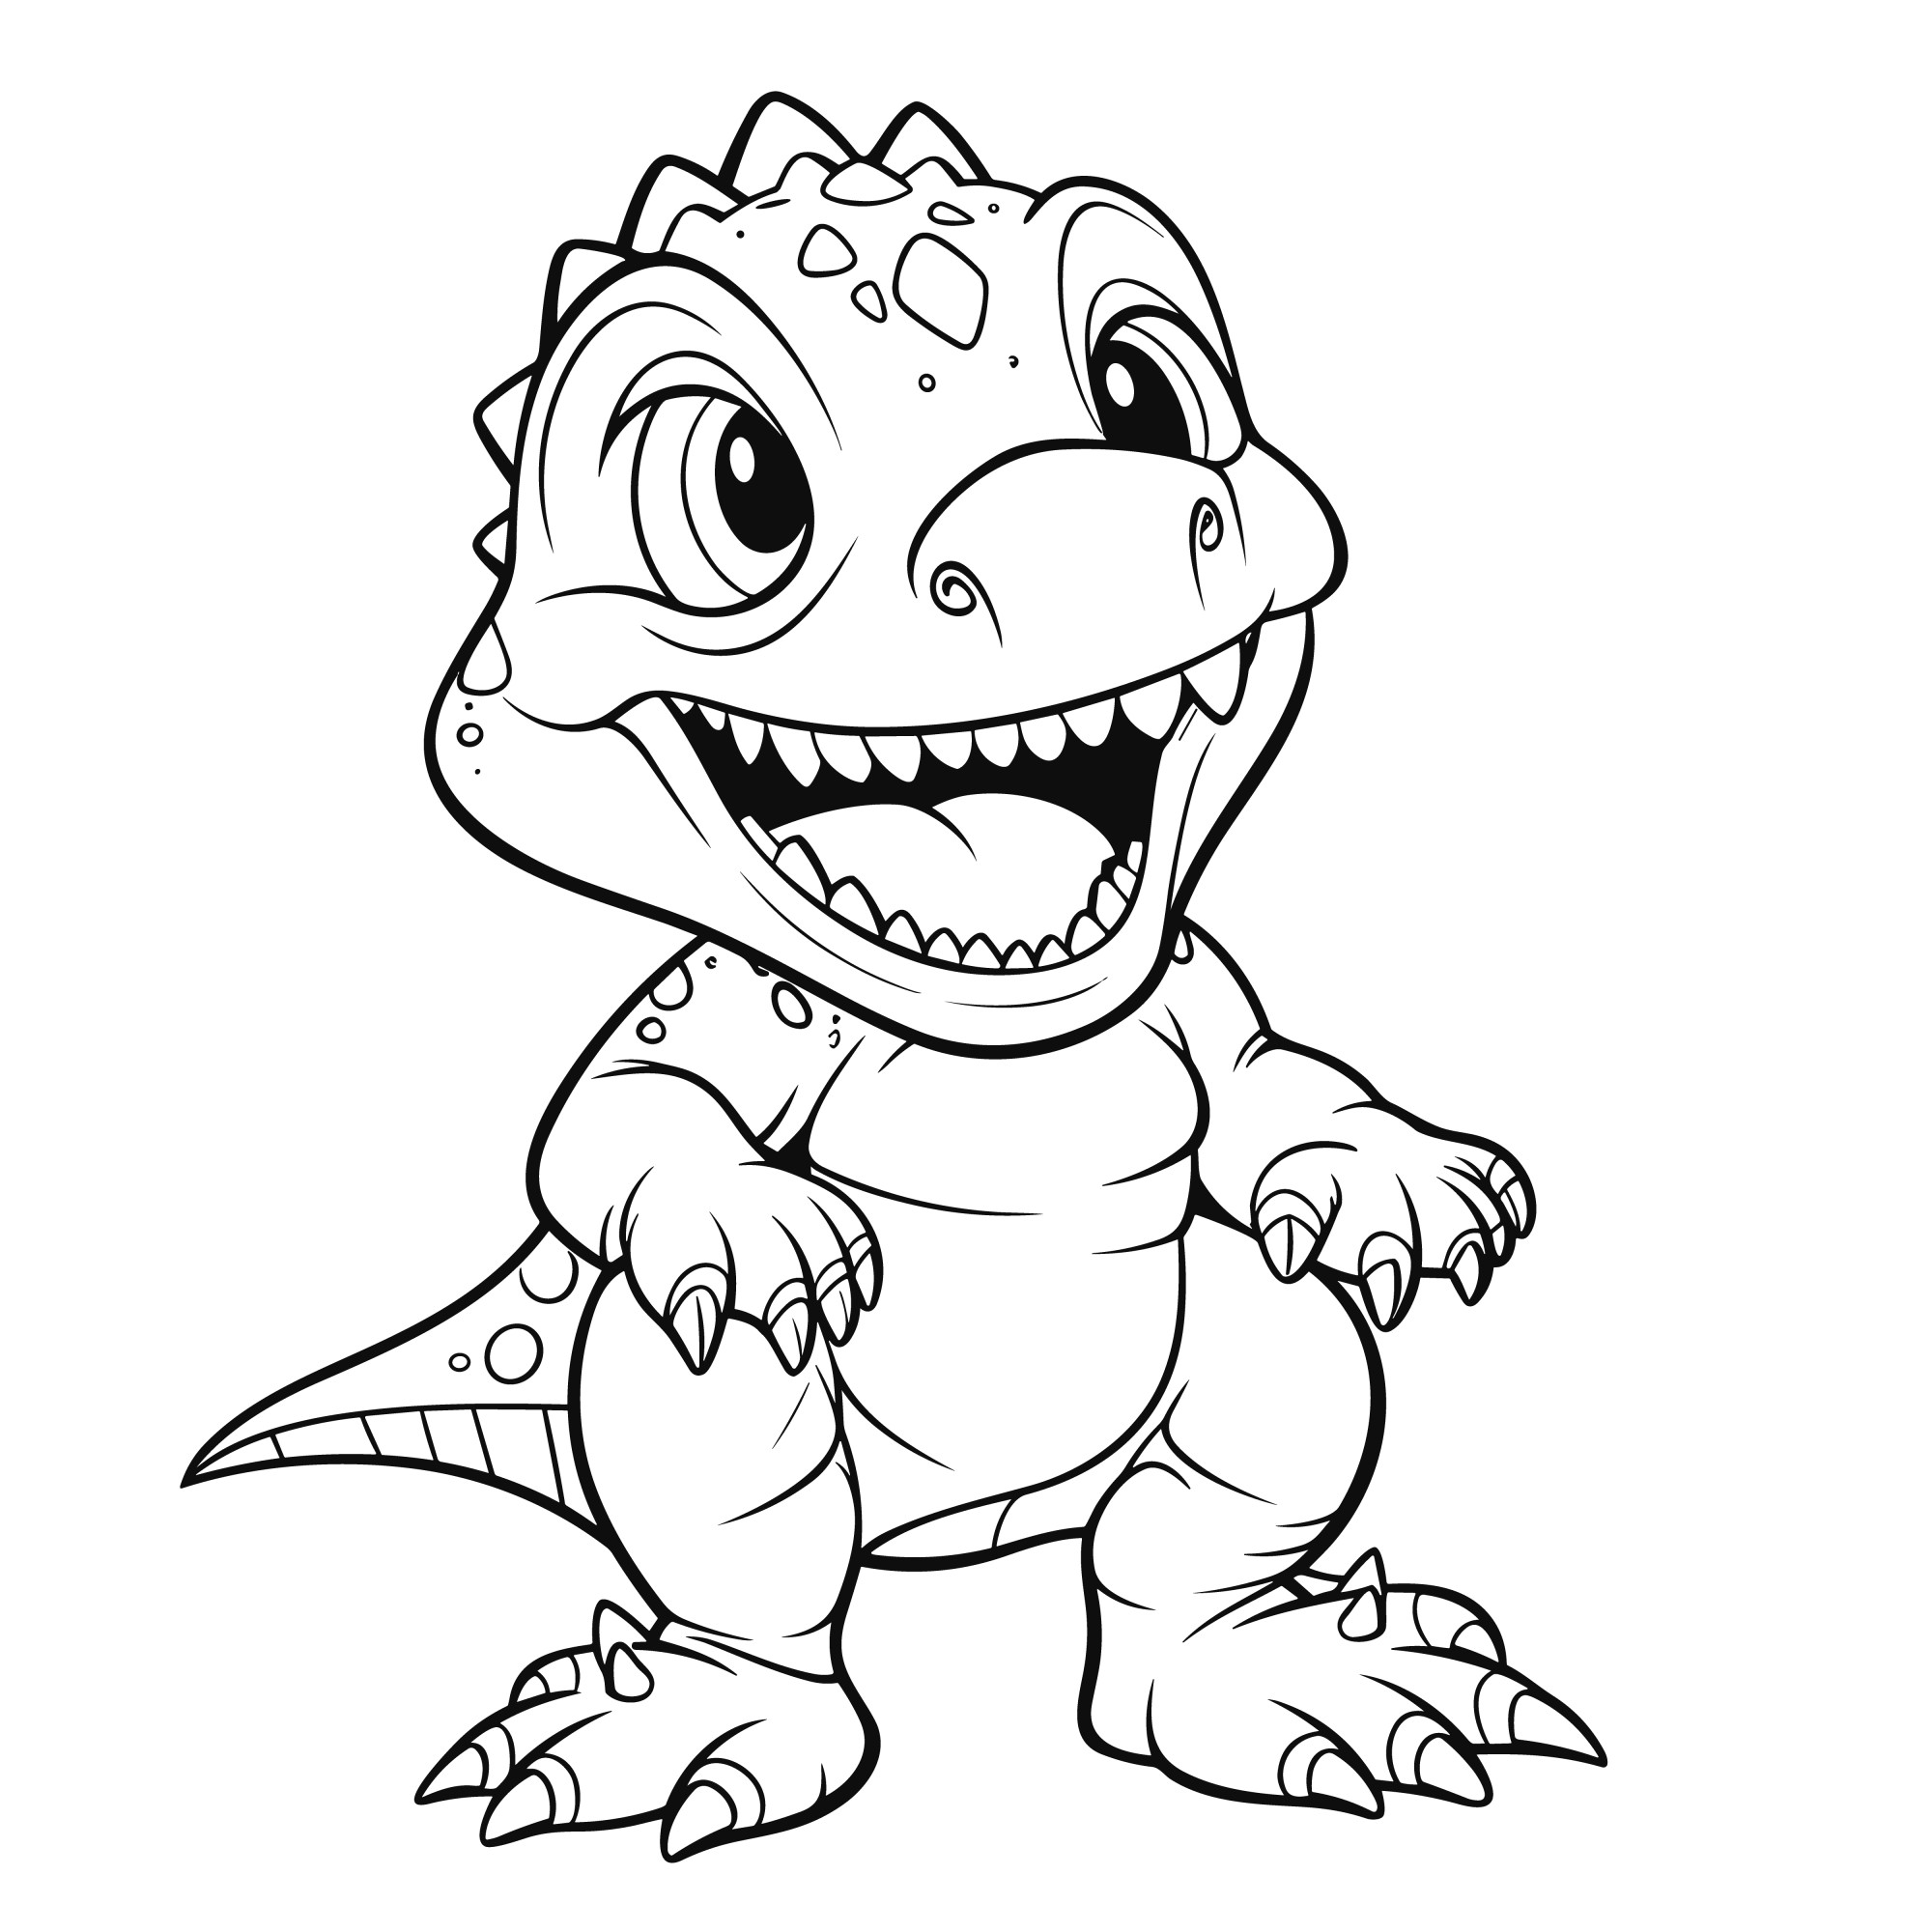 Раскраска для детей: динозавр малыш Гиганотозавр